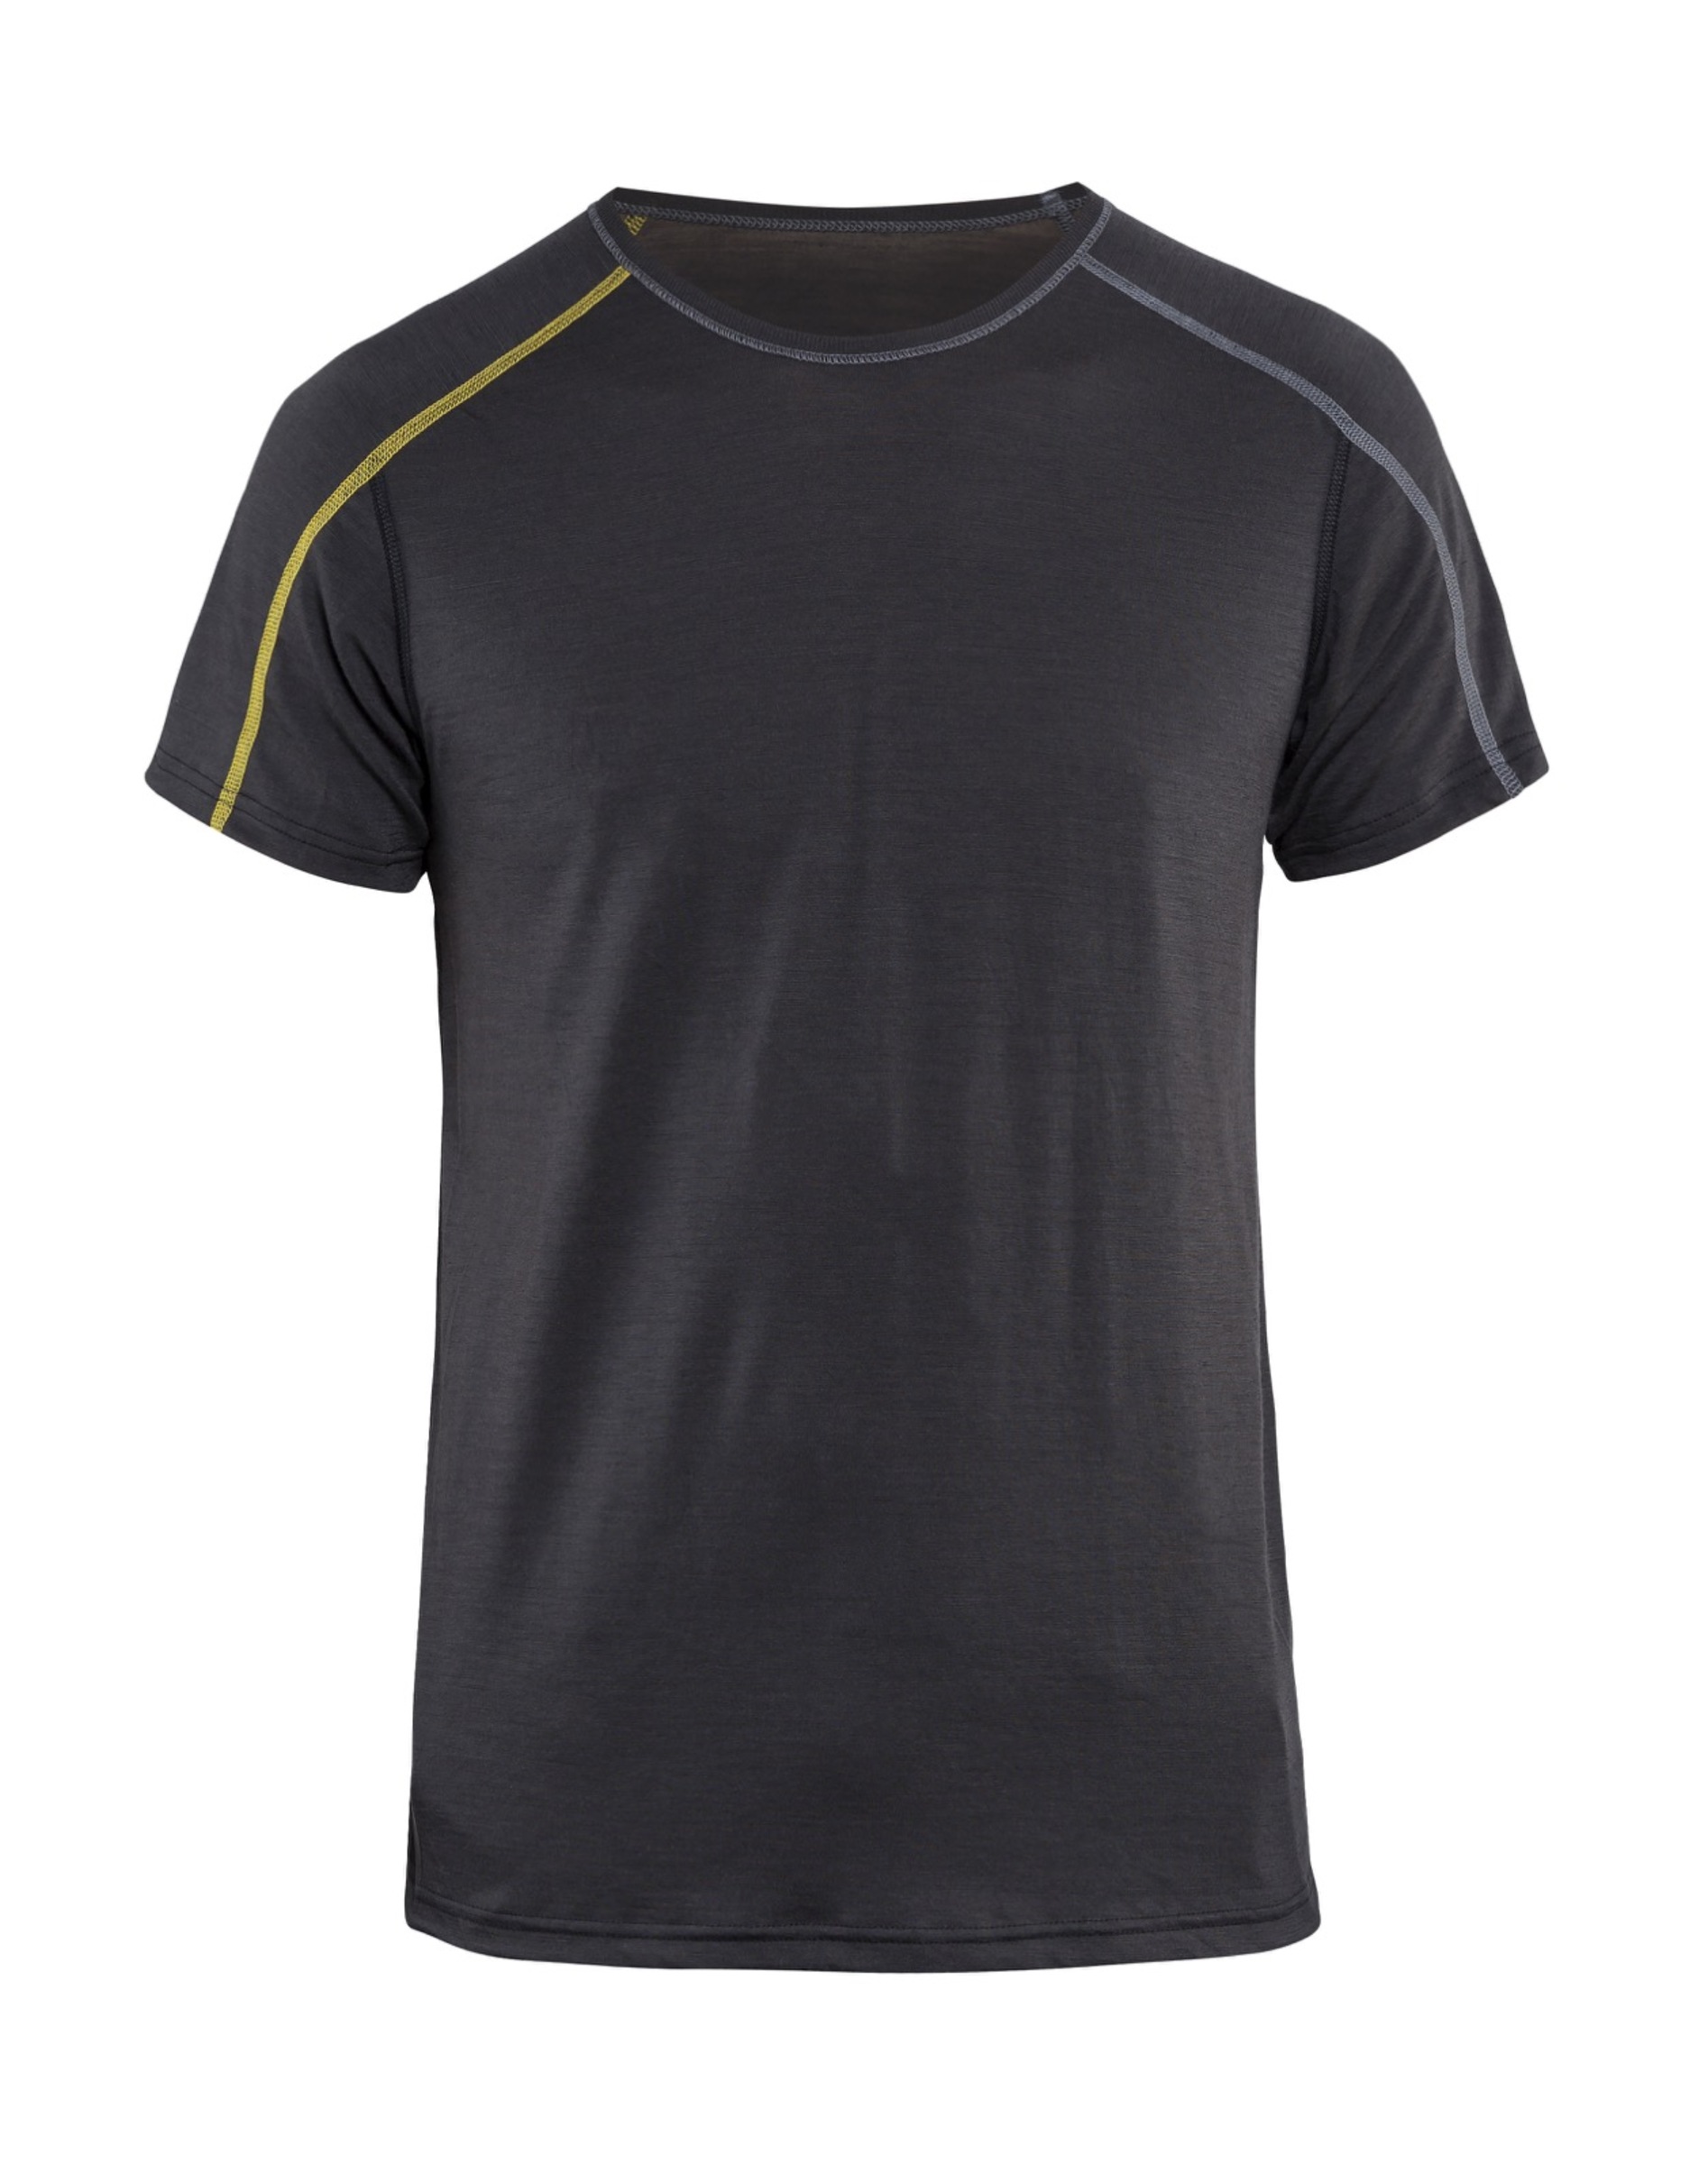 Blåkläder Underställ T-Shirt Xlight, 100% Merinoull